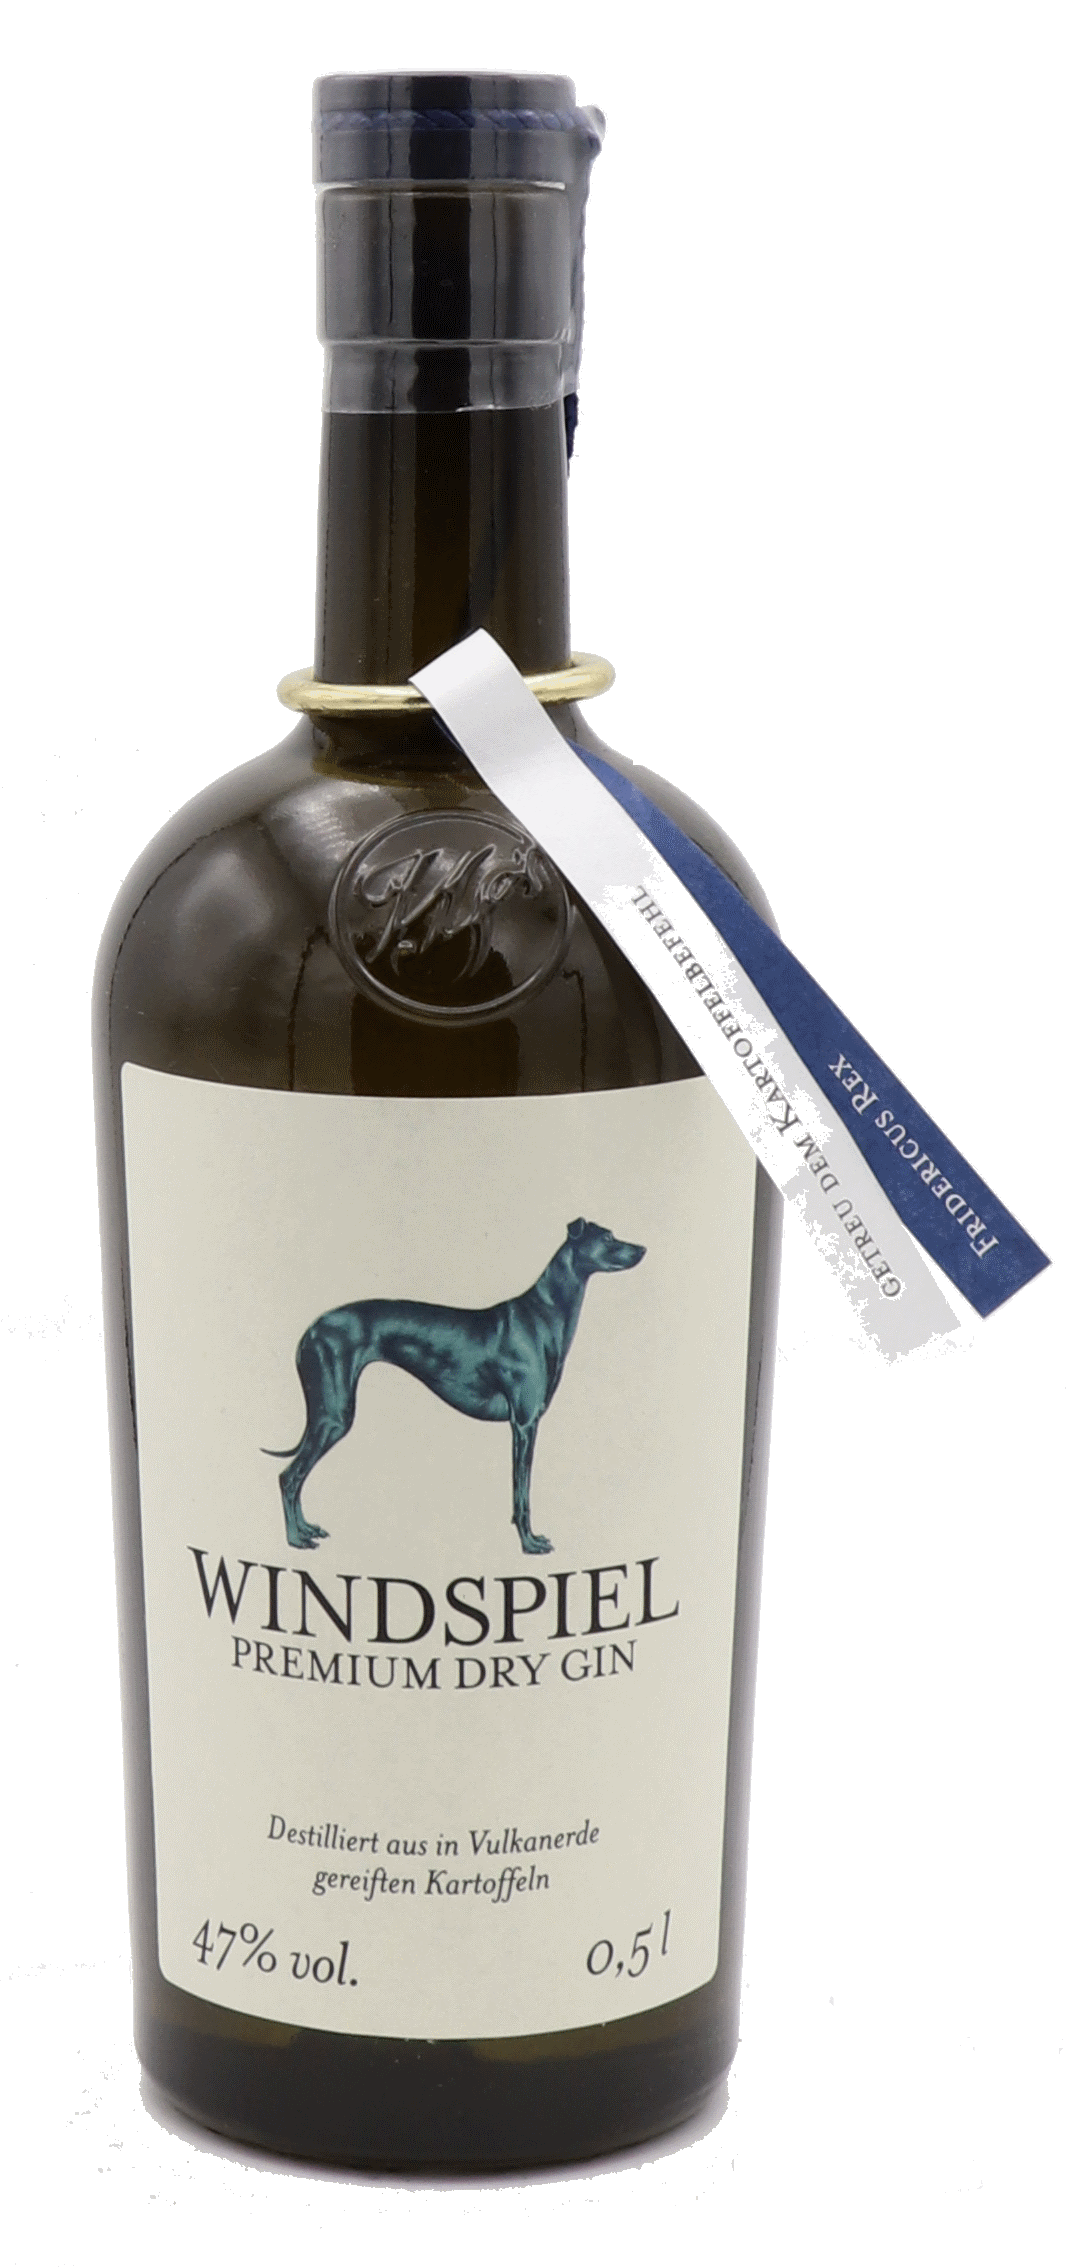 Windspiel - Premium dry gin